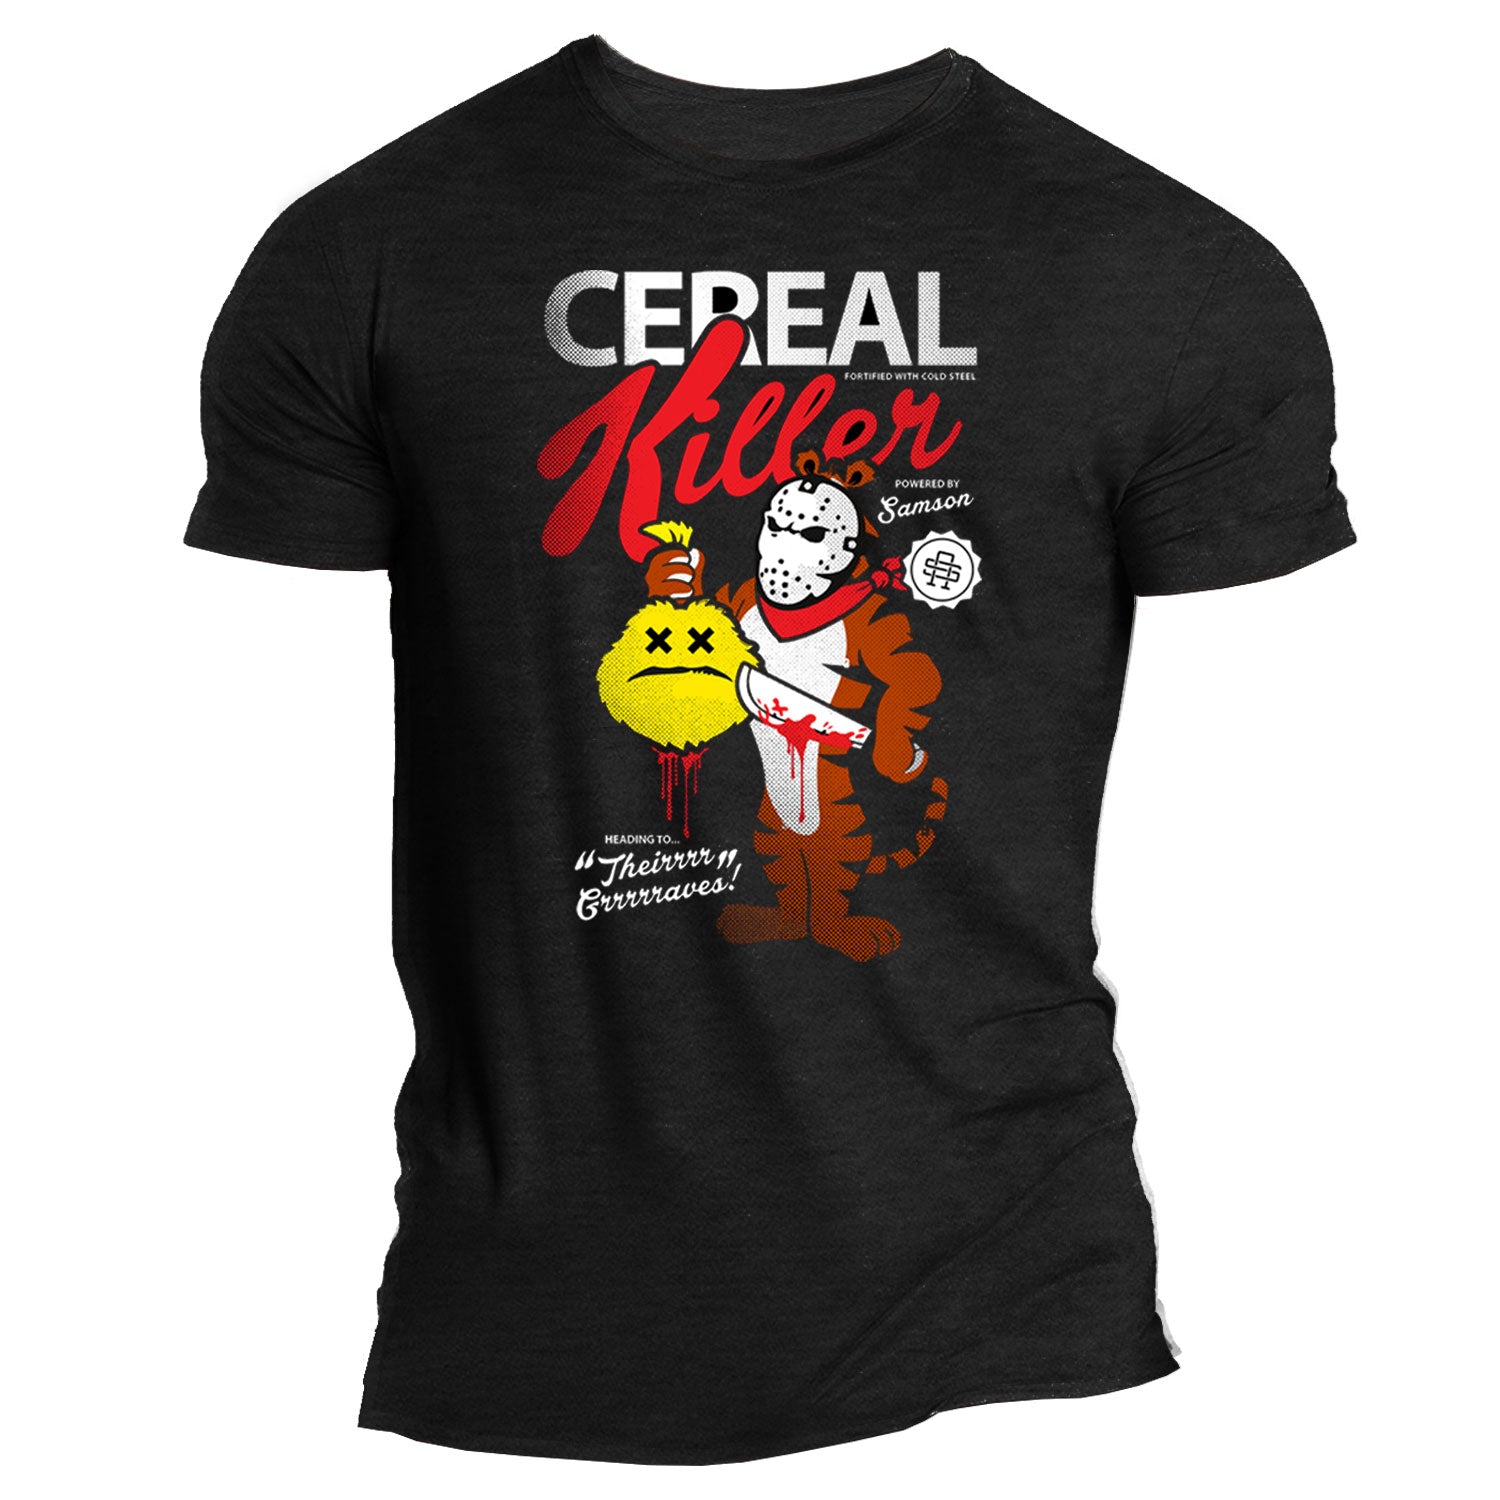 Cereal Killer Gym T-Shirt